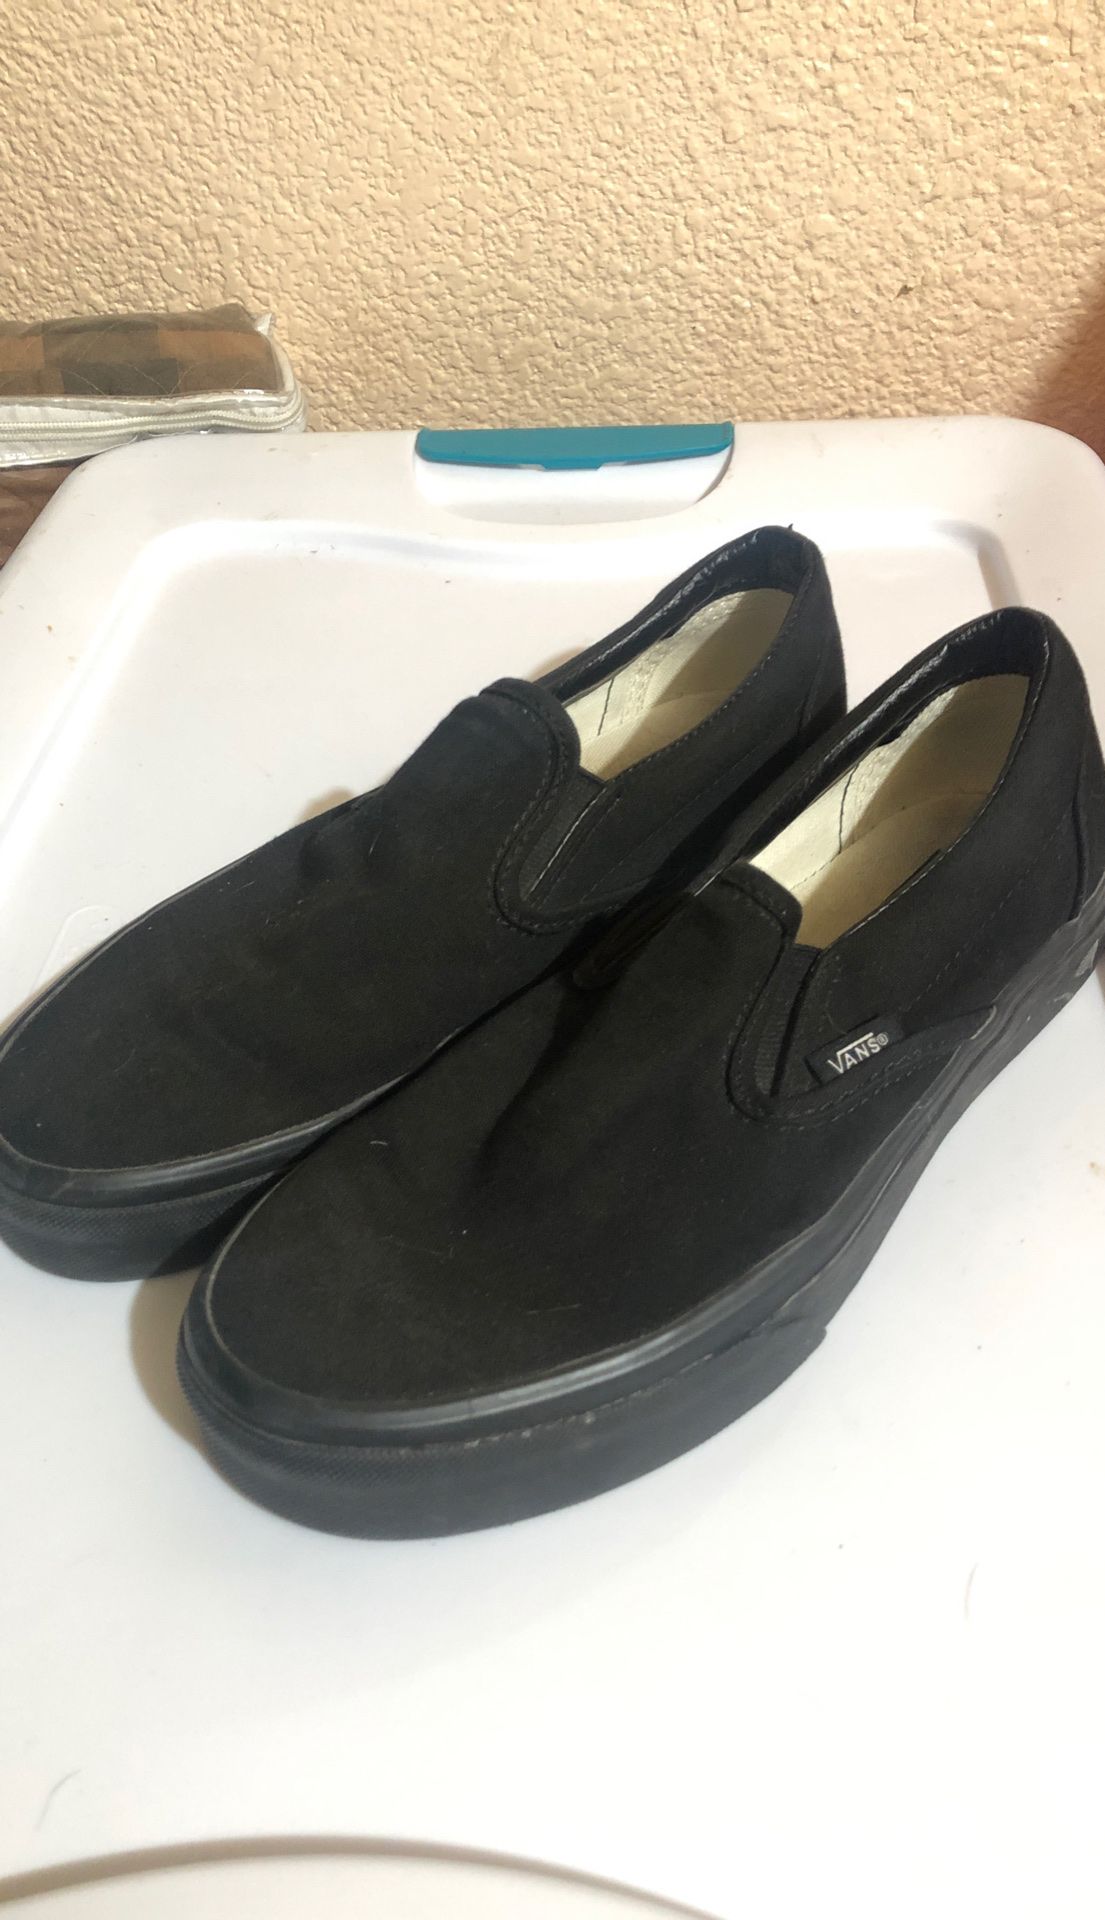 Vans black slip on shoe men’s size 7 woman’s size 8.5